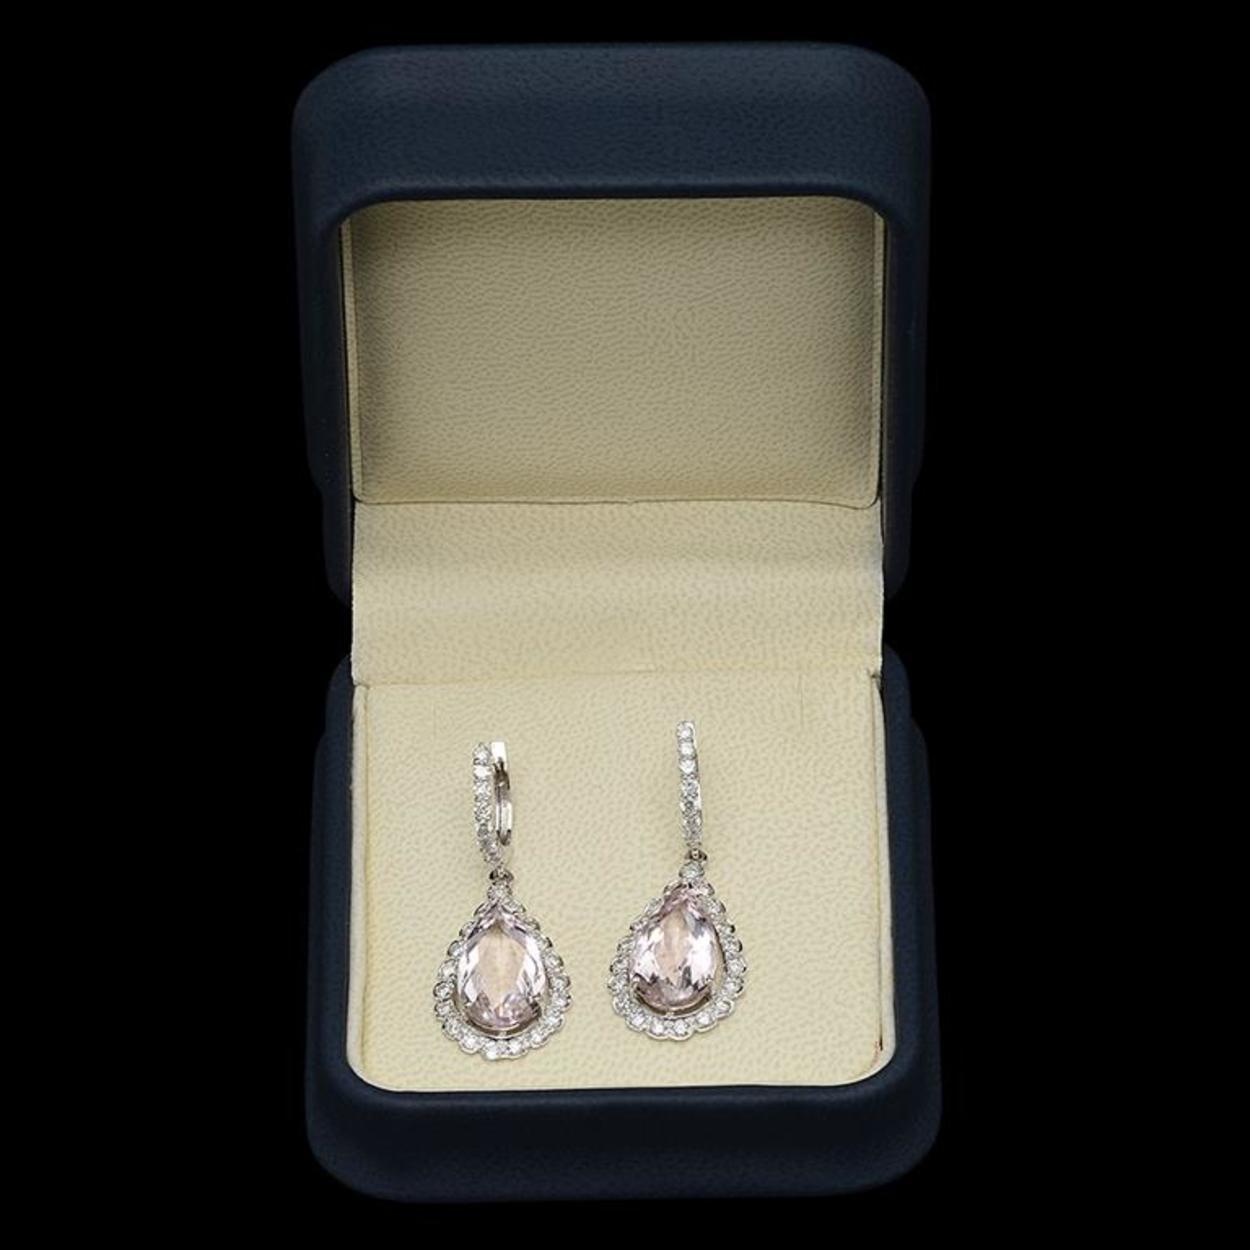 14K Gold 9.62ct Morganite & 1.71ct Diamond Earrings